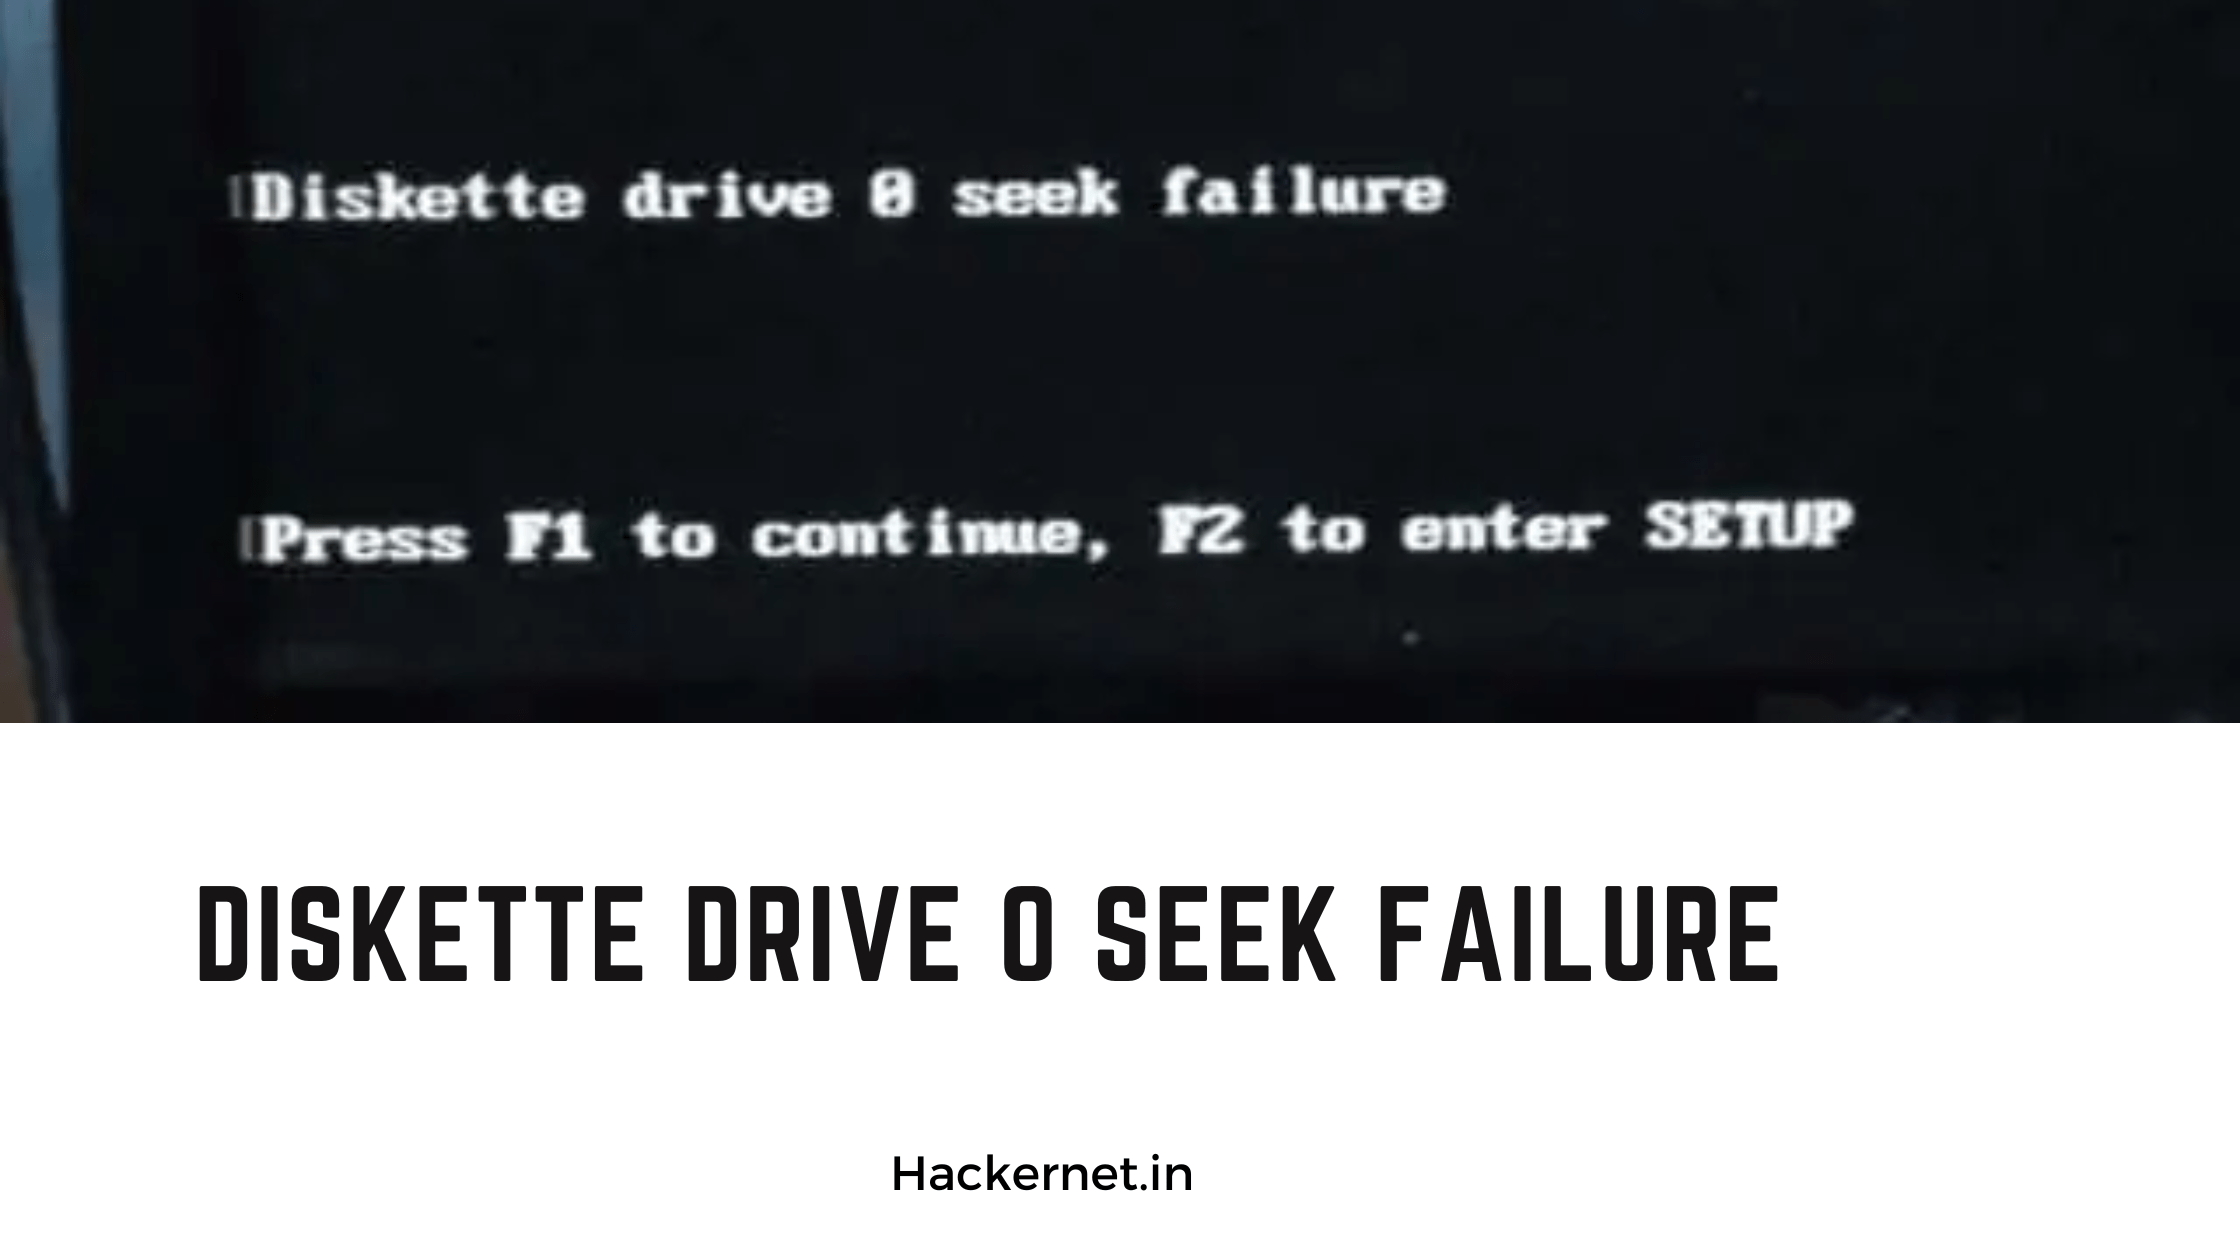 Diskette drive 0 seek failure